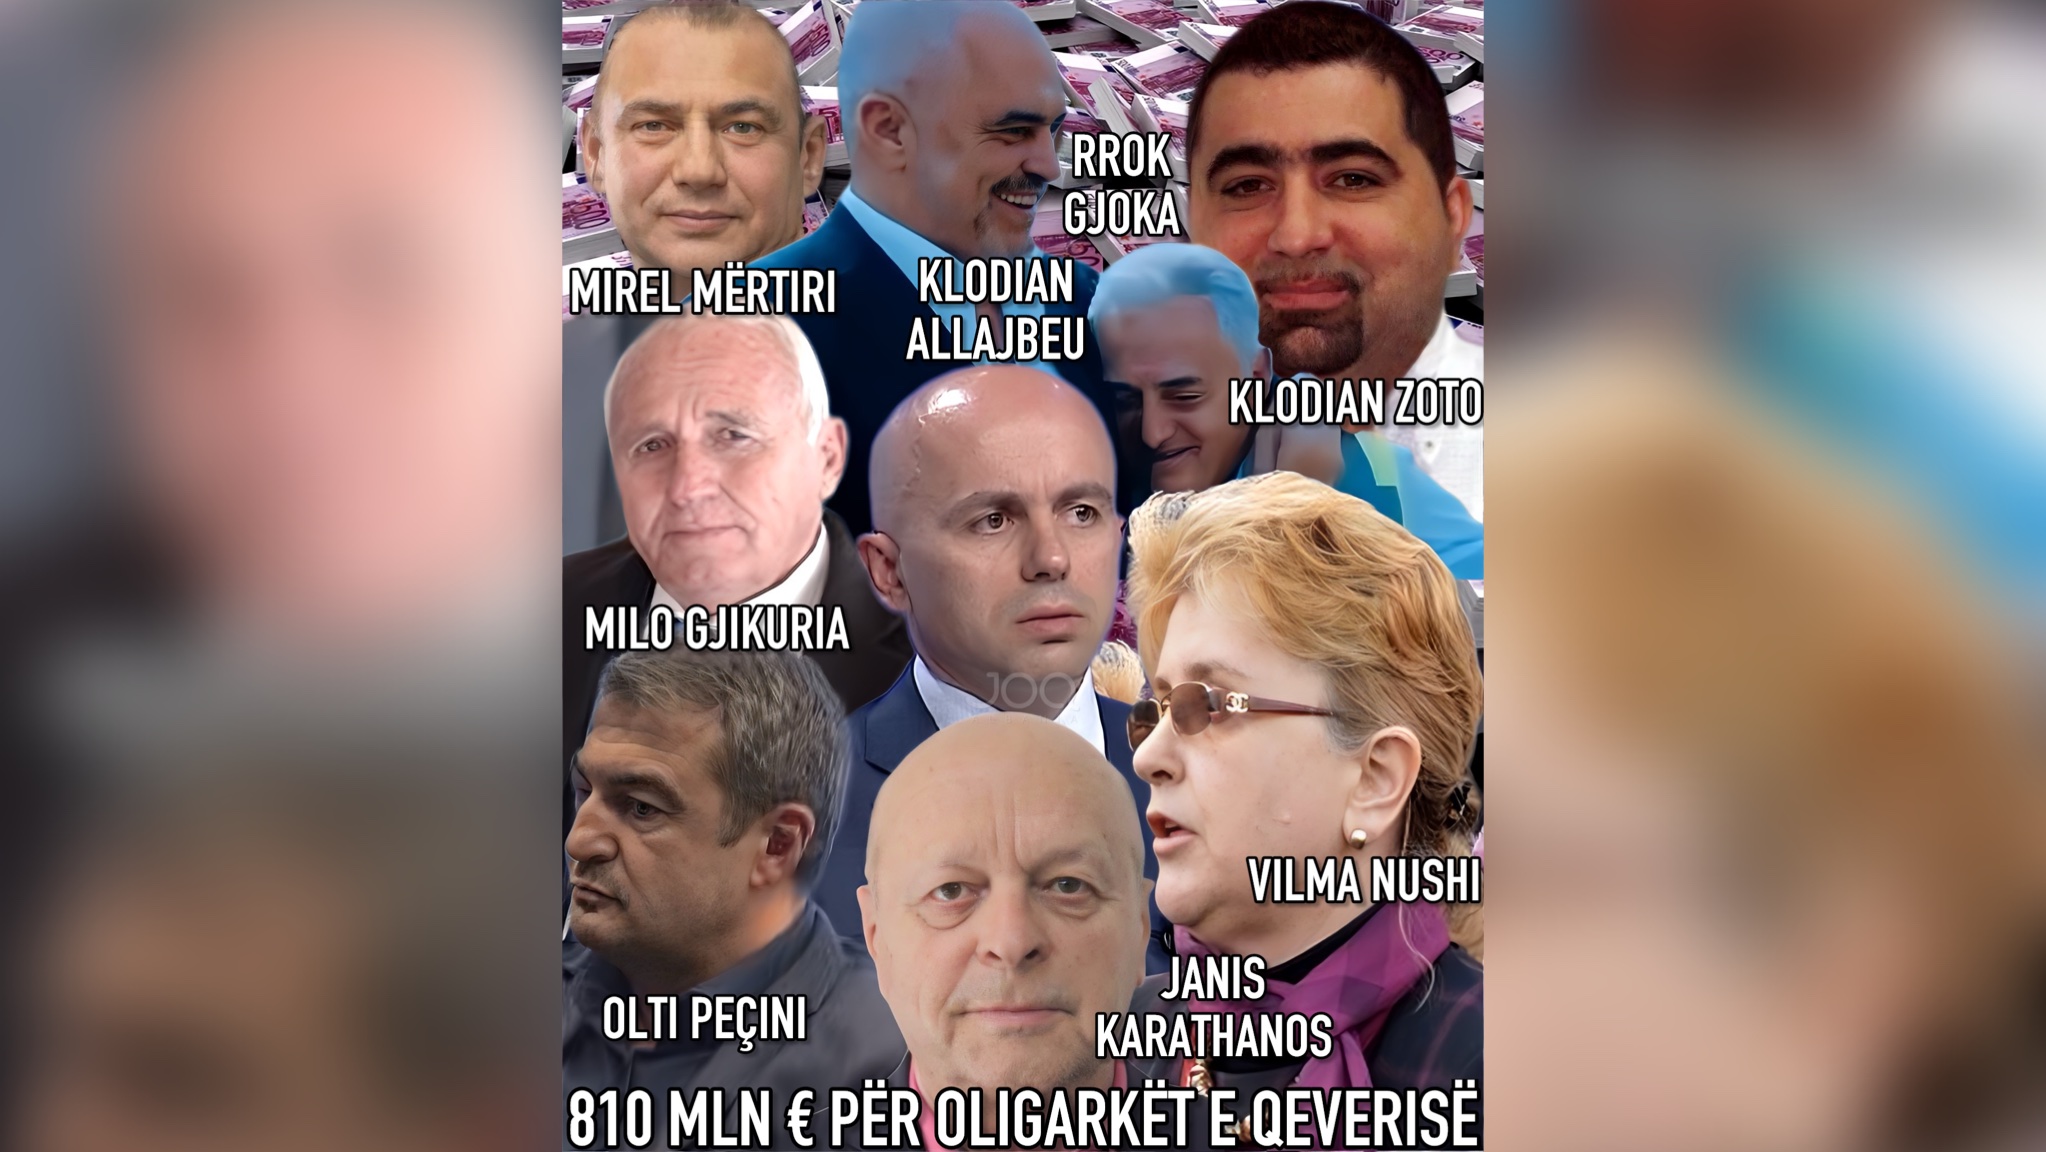 Shqiptarët do japin nga xhepi 810 MILION € për oligarkët e Rilindjes